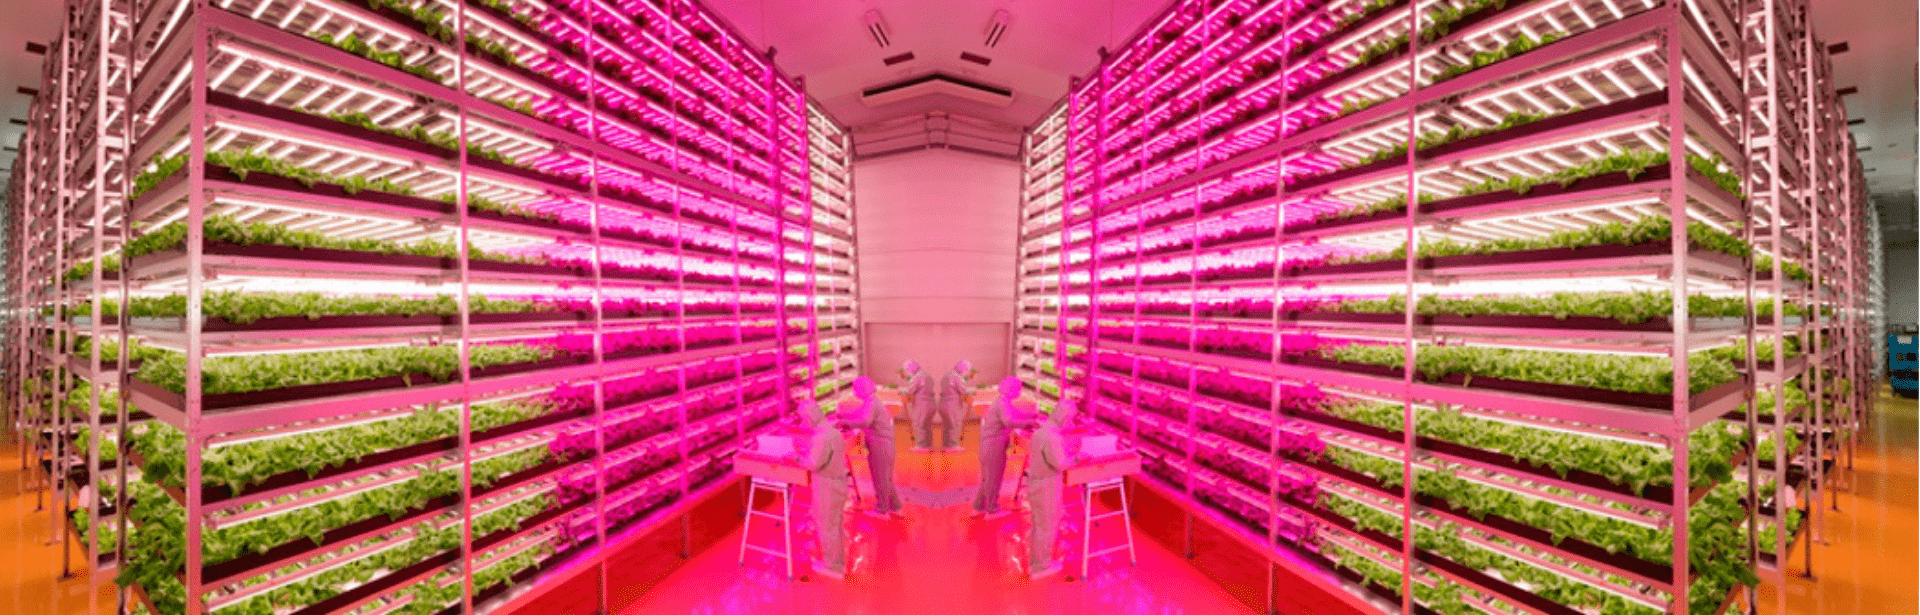 การวัดแสง LED สำหรับฟาร์มเกษตรในโรงเรือน